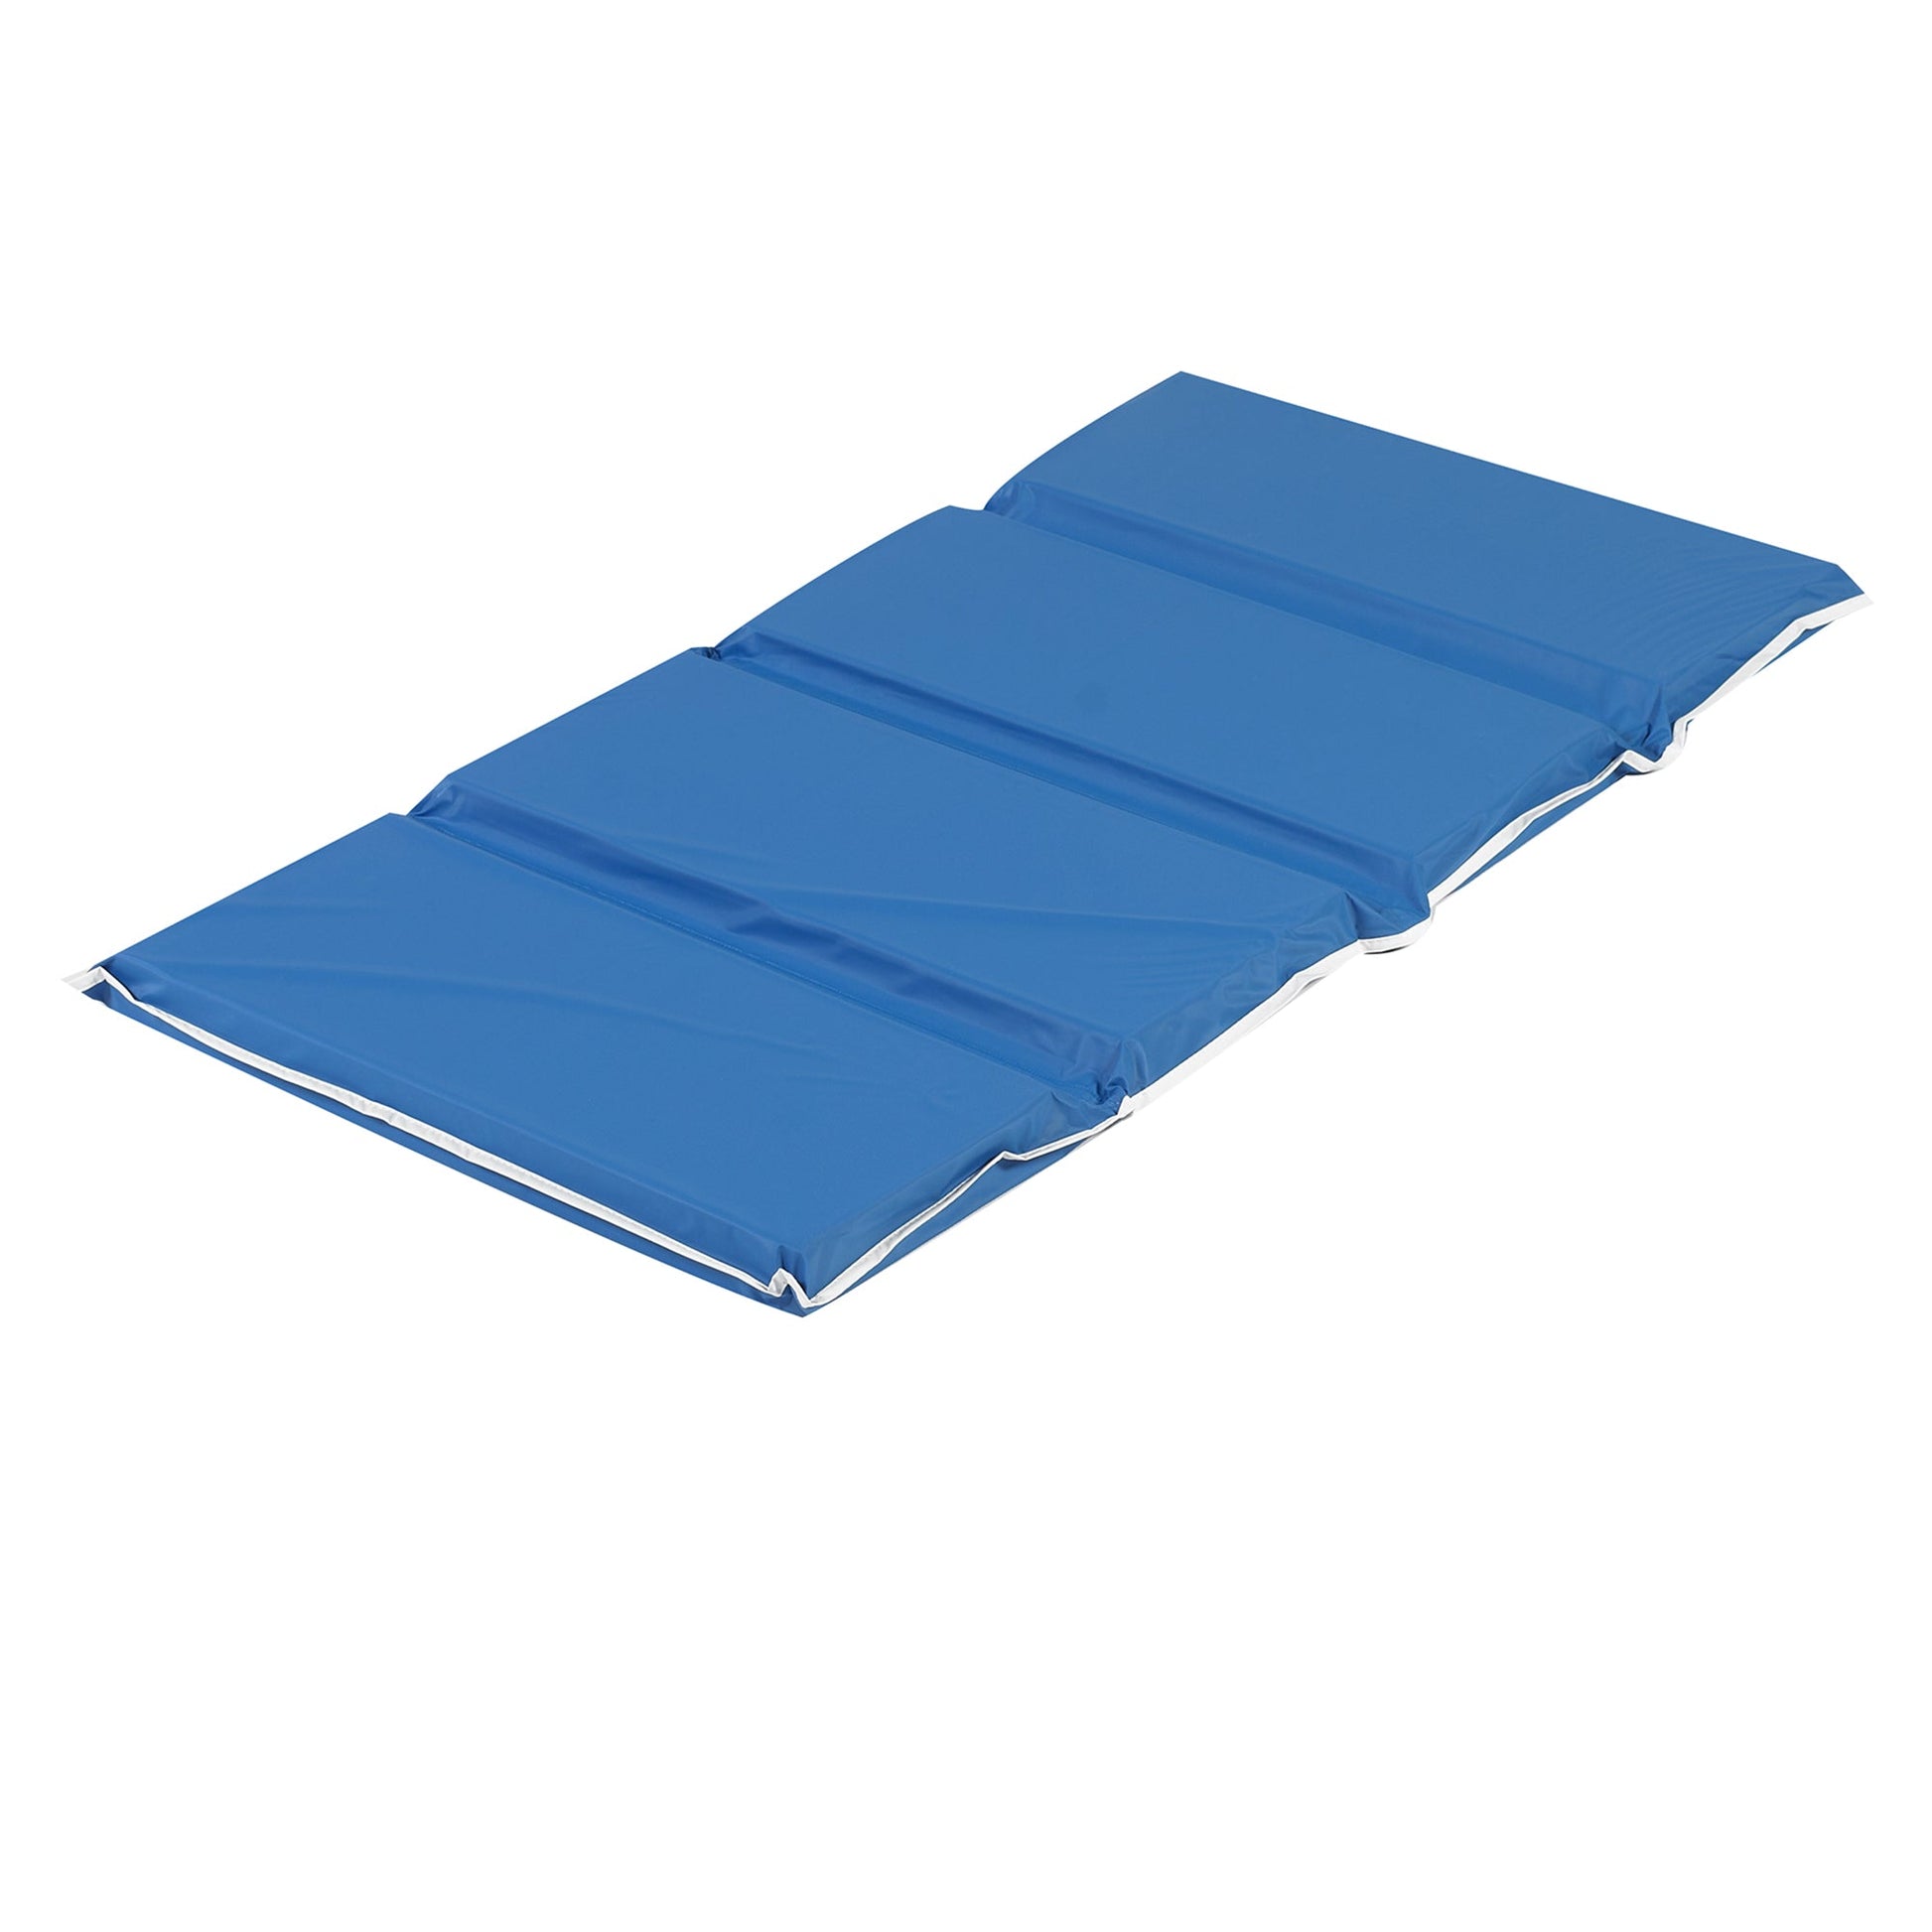 Children's Factory 2" Tough Duty Folding Rest Mat - Set of 5 - Blue (CF400-053) - SchoolOutlet